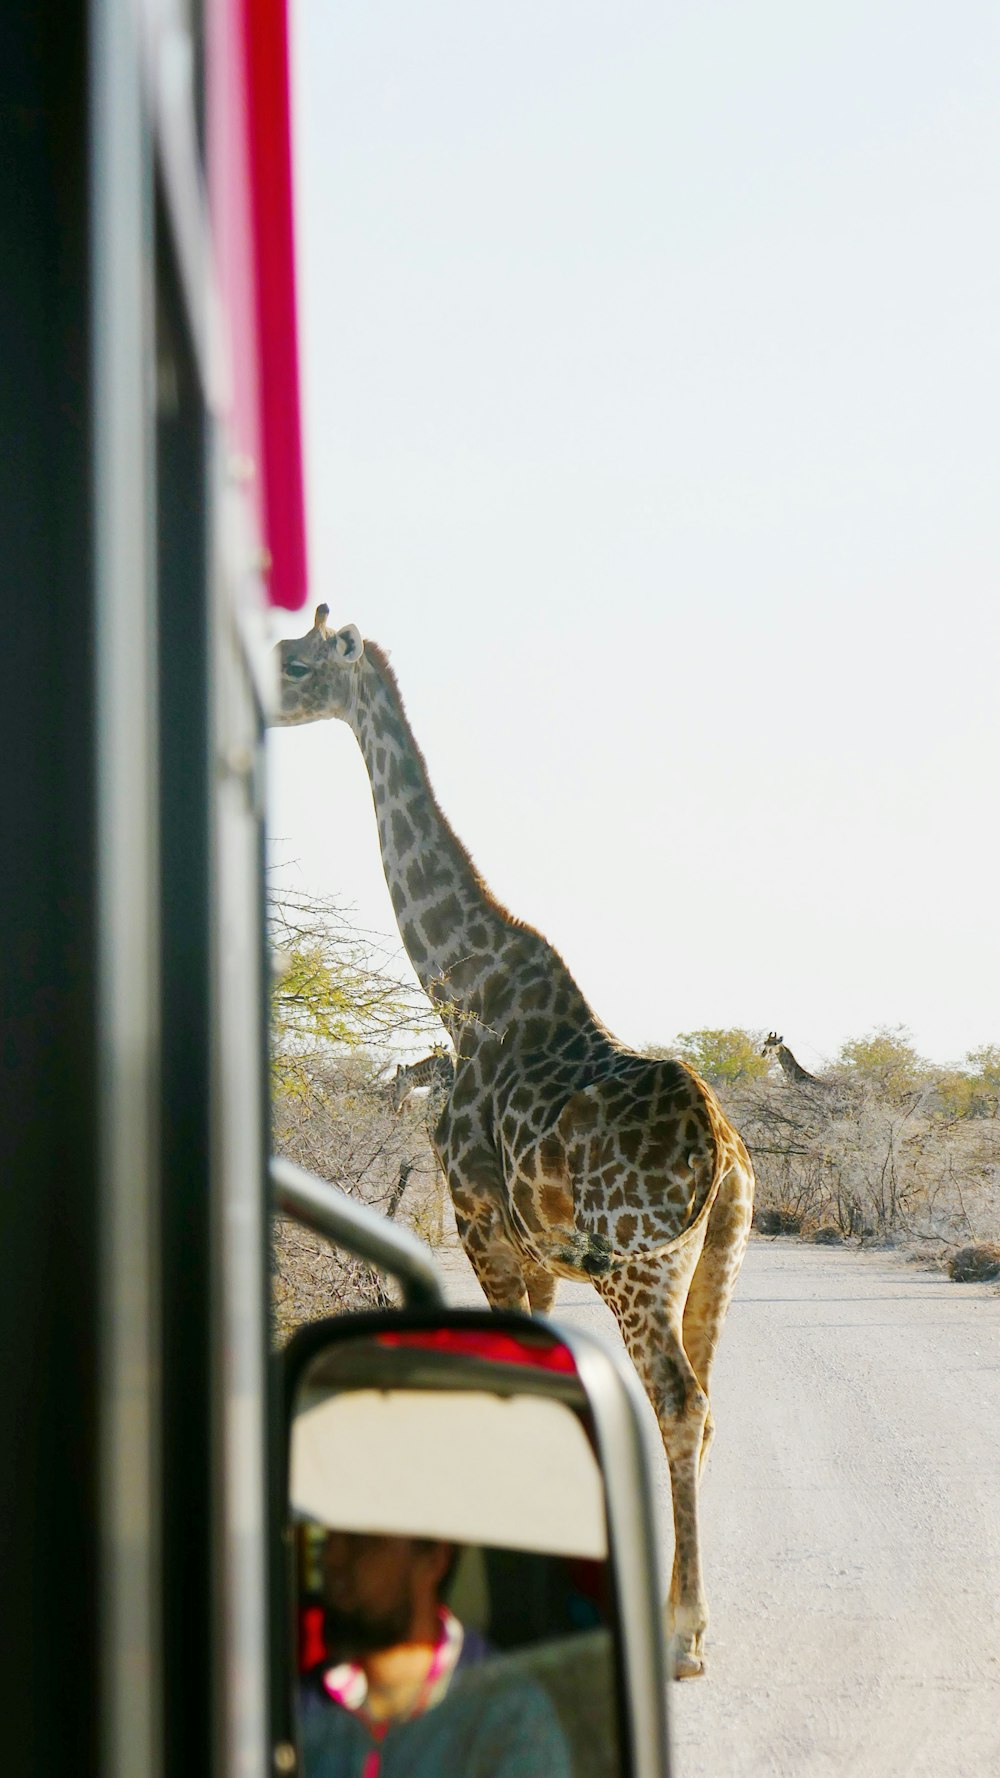 Une girafe debout à côté d’une voiture sur une route